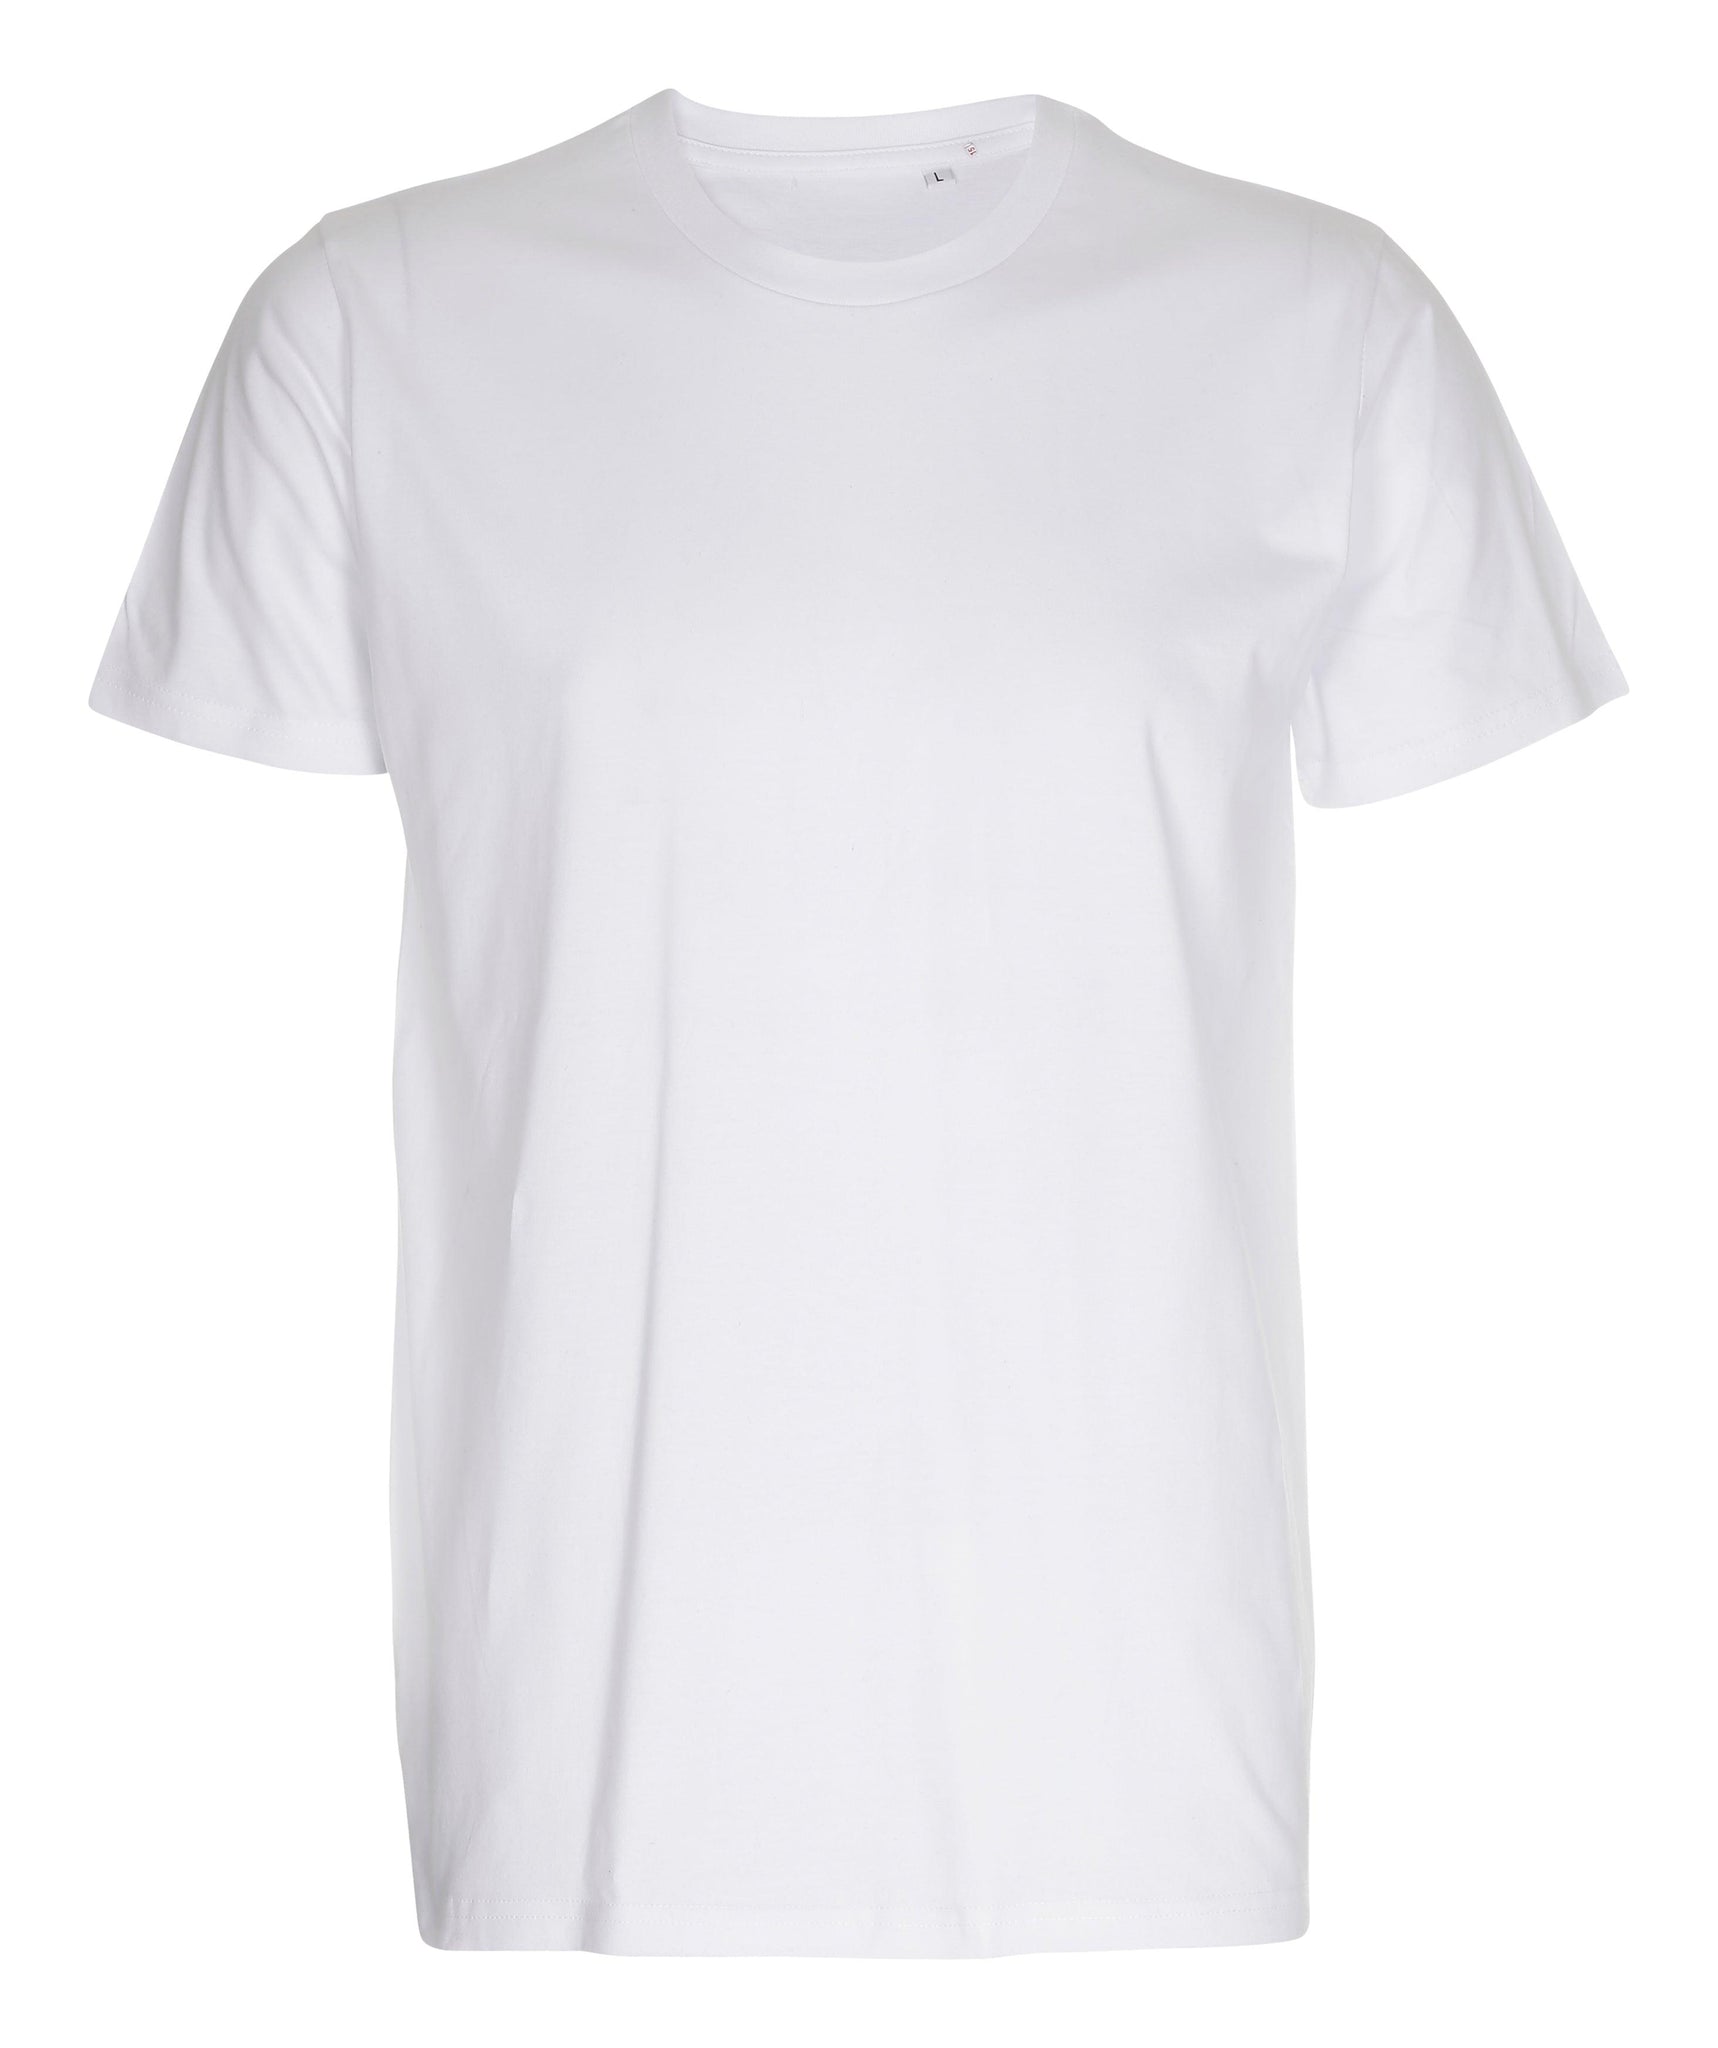 LabelFree HERRE FITTED T-SHIRT - T-Shirt - JA Profil 